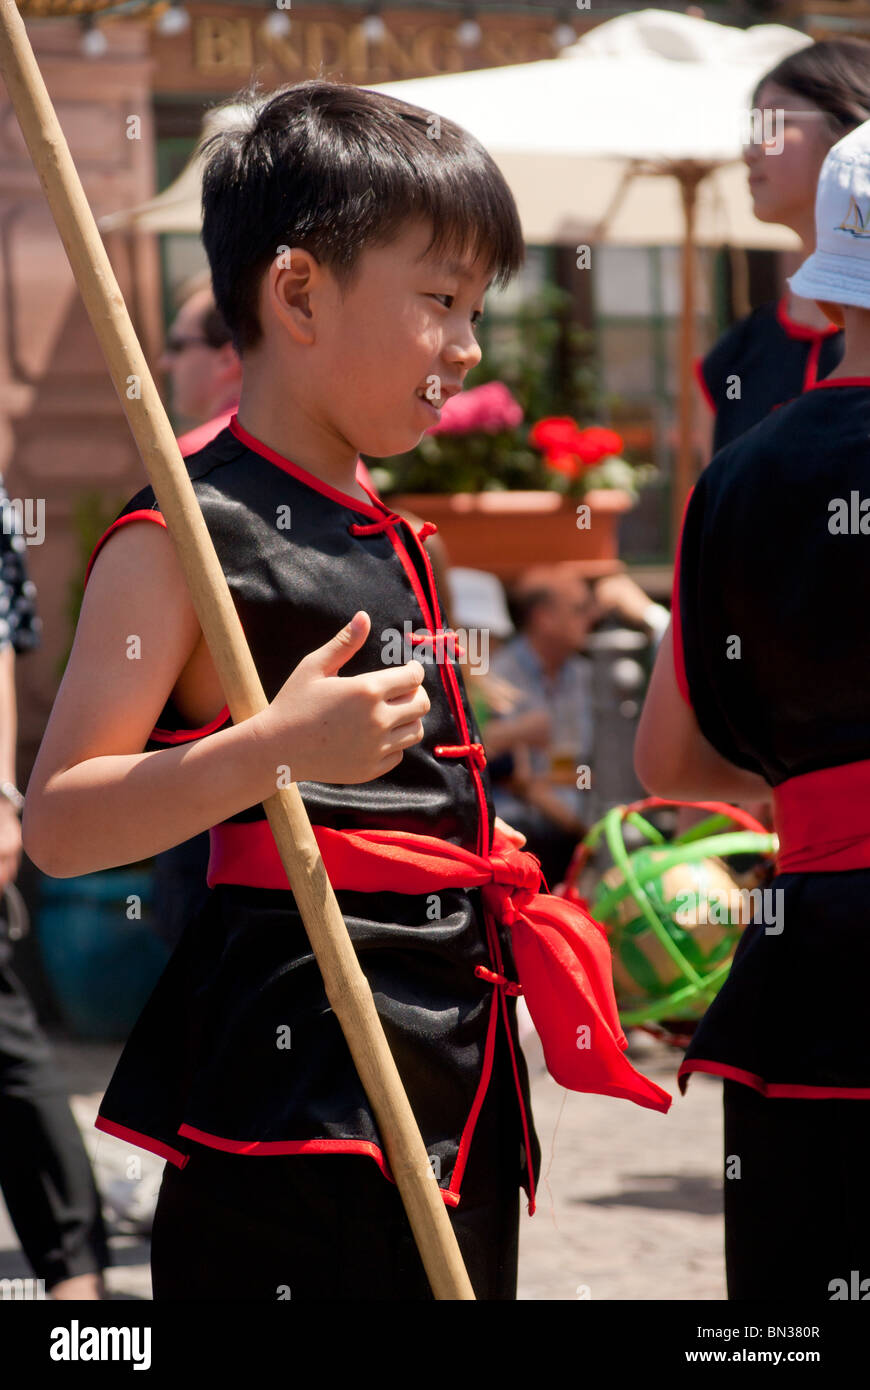 FRANKFURT - 26 JUNI. Parade der Kulturen. Chinesische junge mit Tracht. Stockfoto